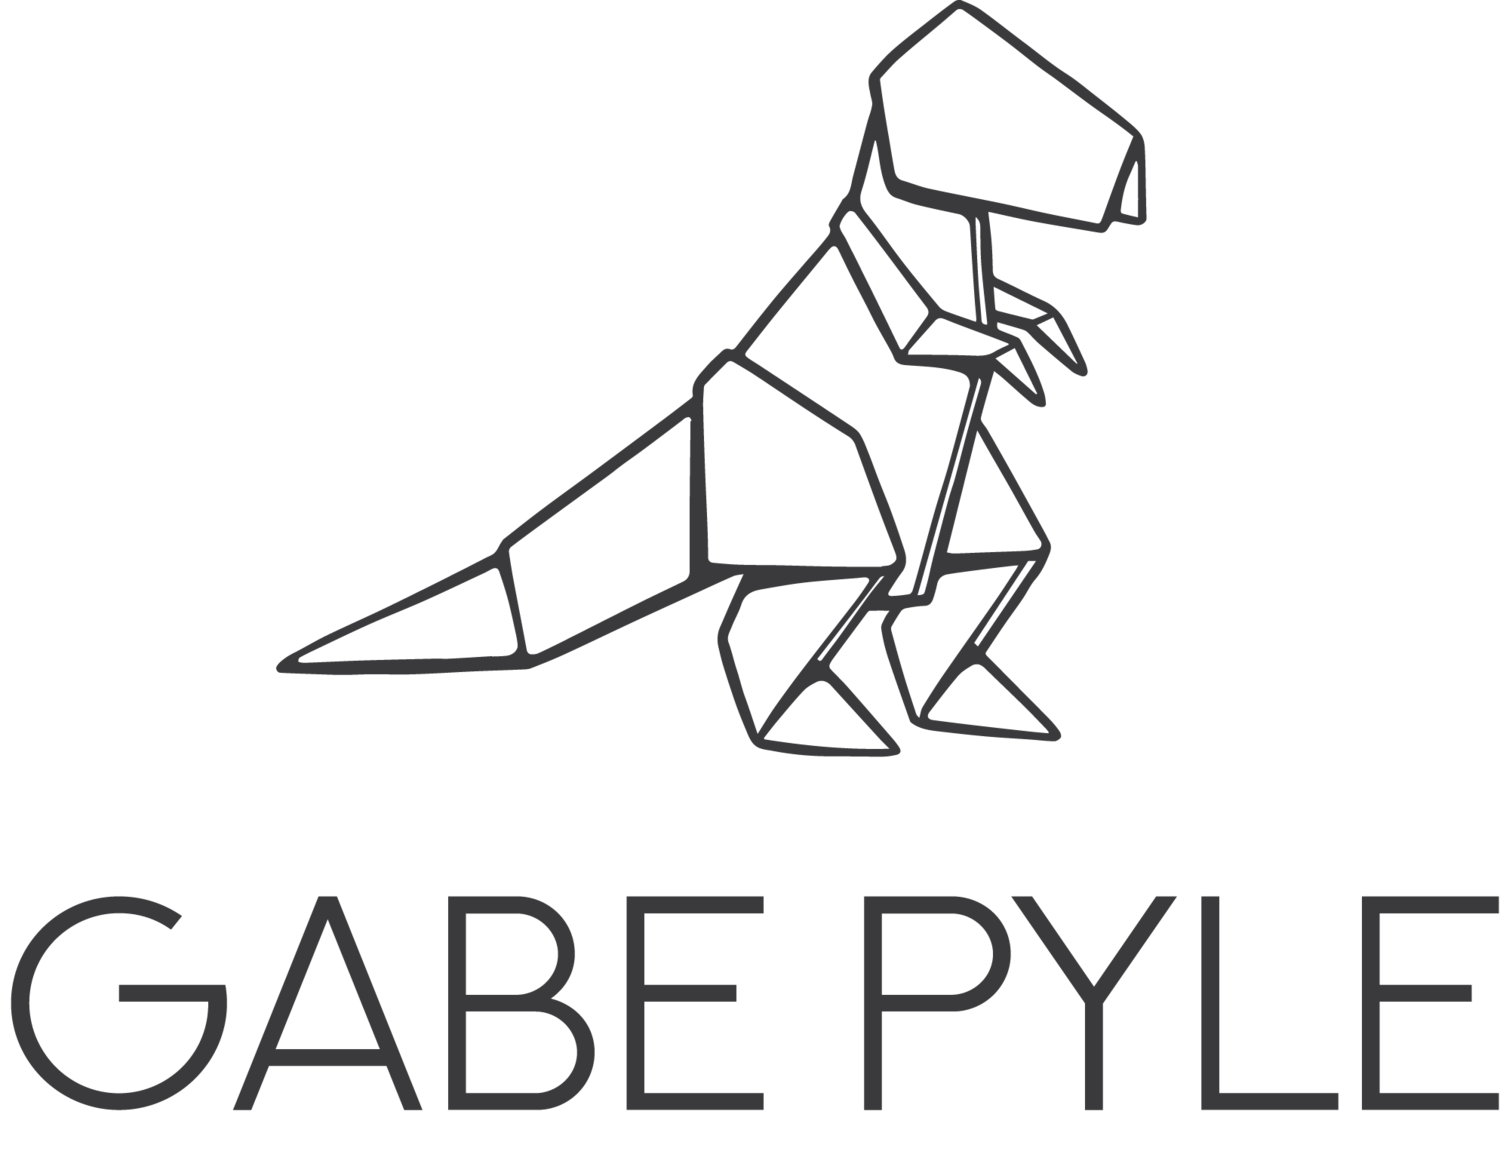 Gabe Pyle